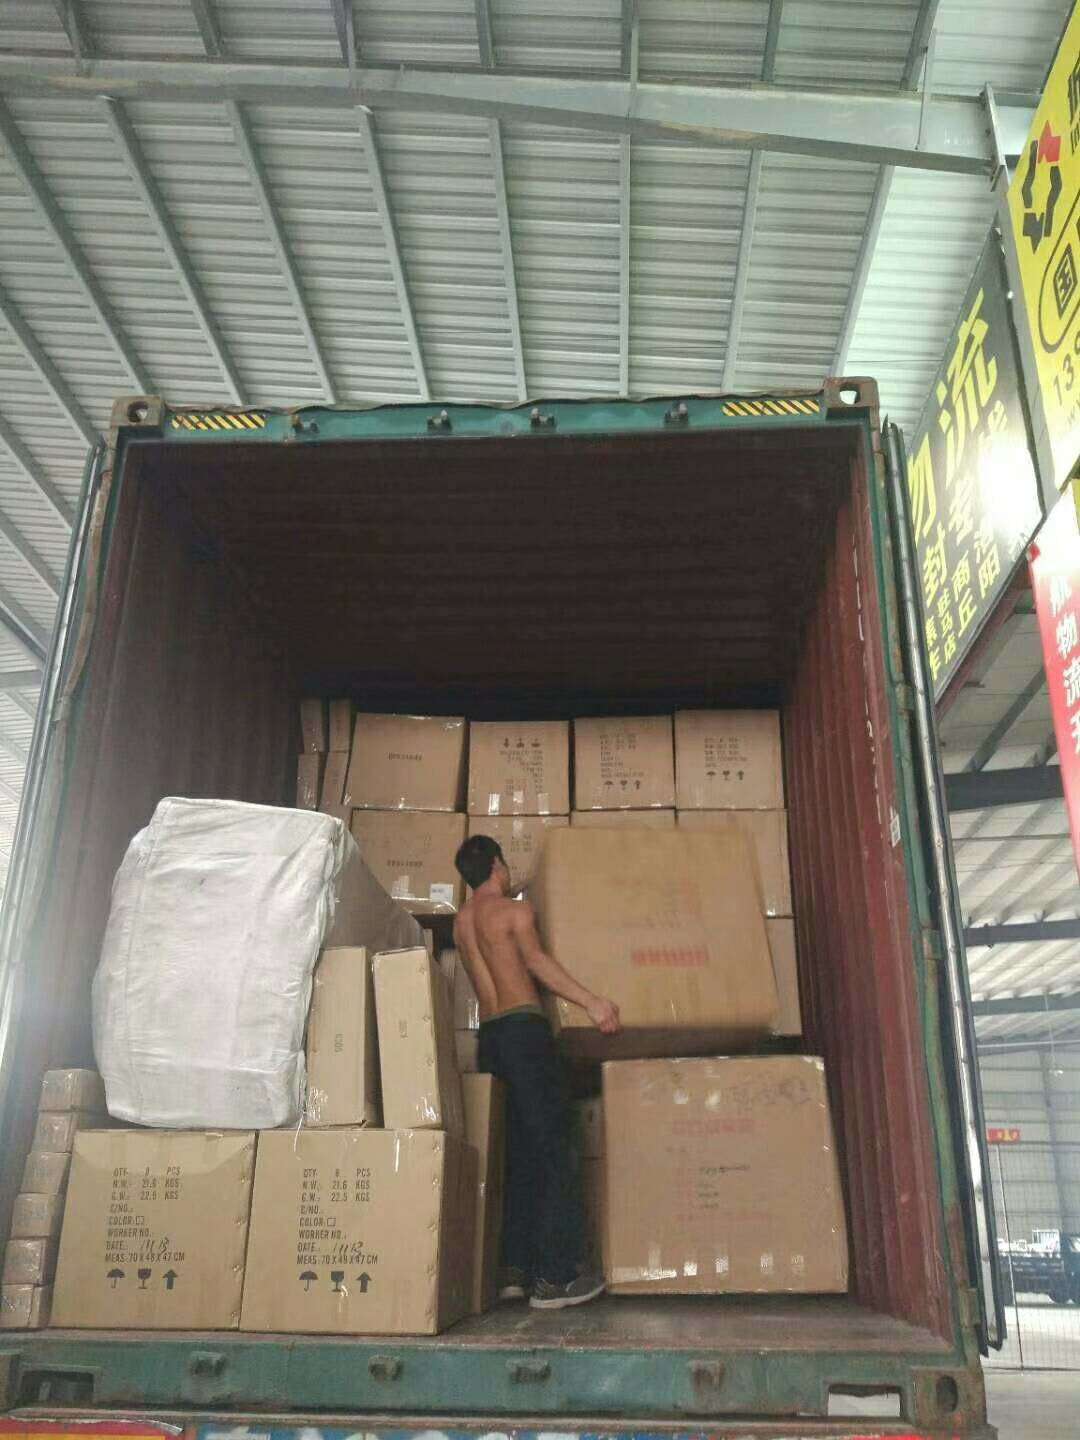 马来西亚货运代理装货现场2